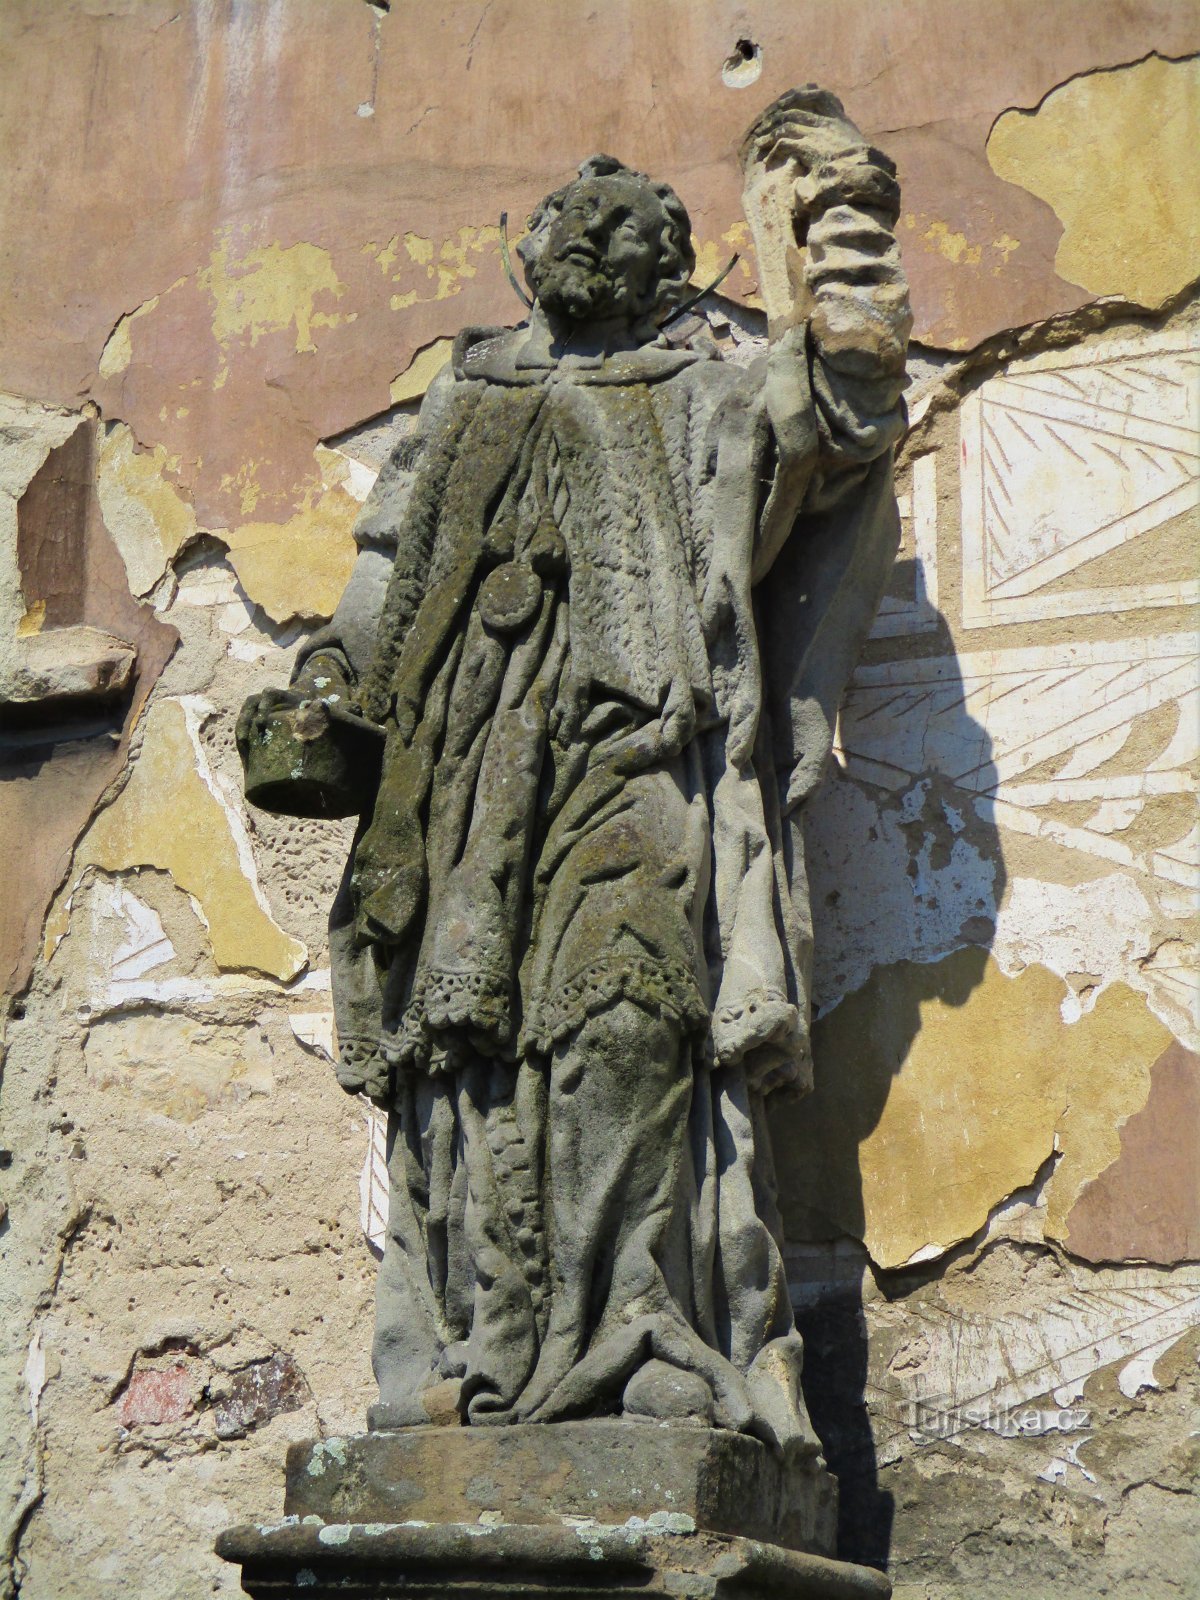 Kip sv. Ivana Nepomučkog ispred mlina (Dašice, 16.5.2020. svibnja XNUMX.)